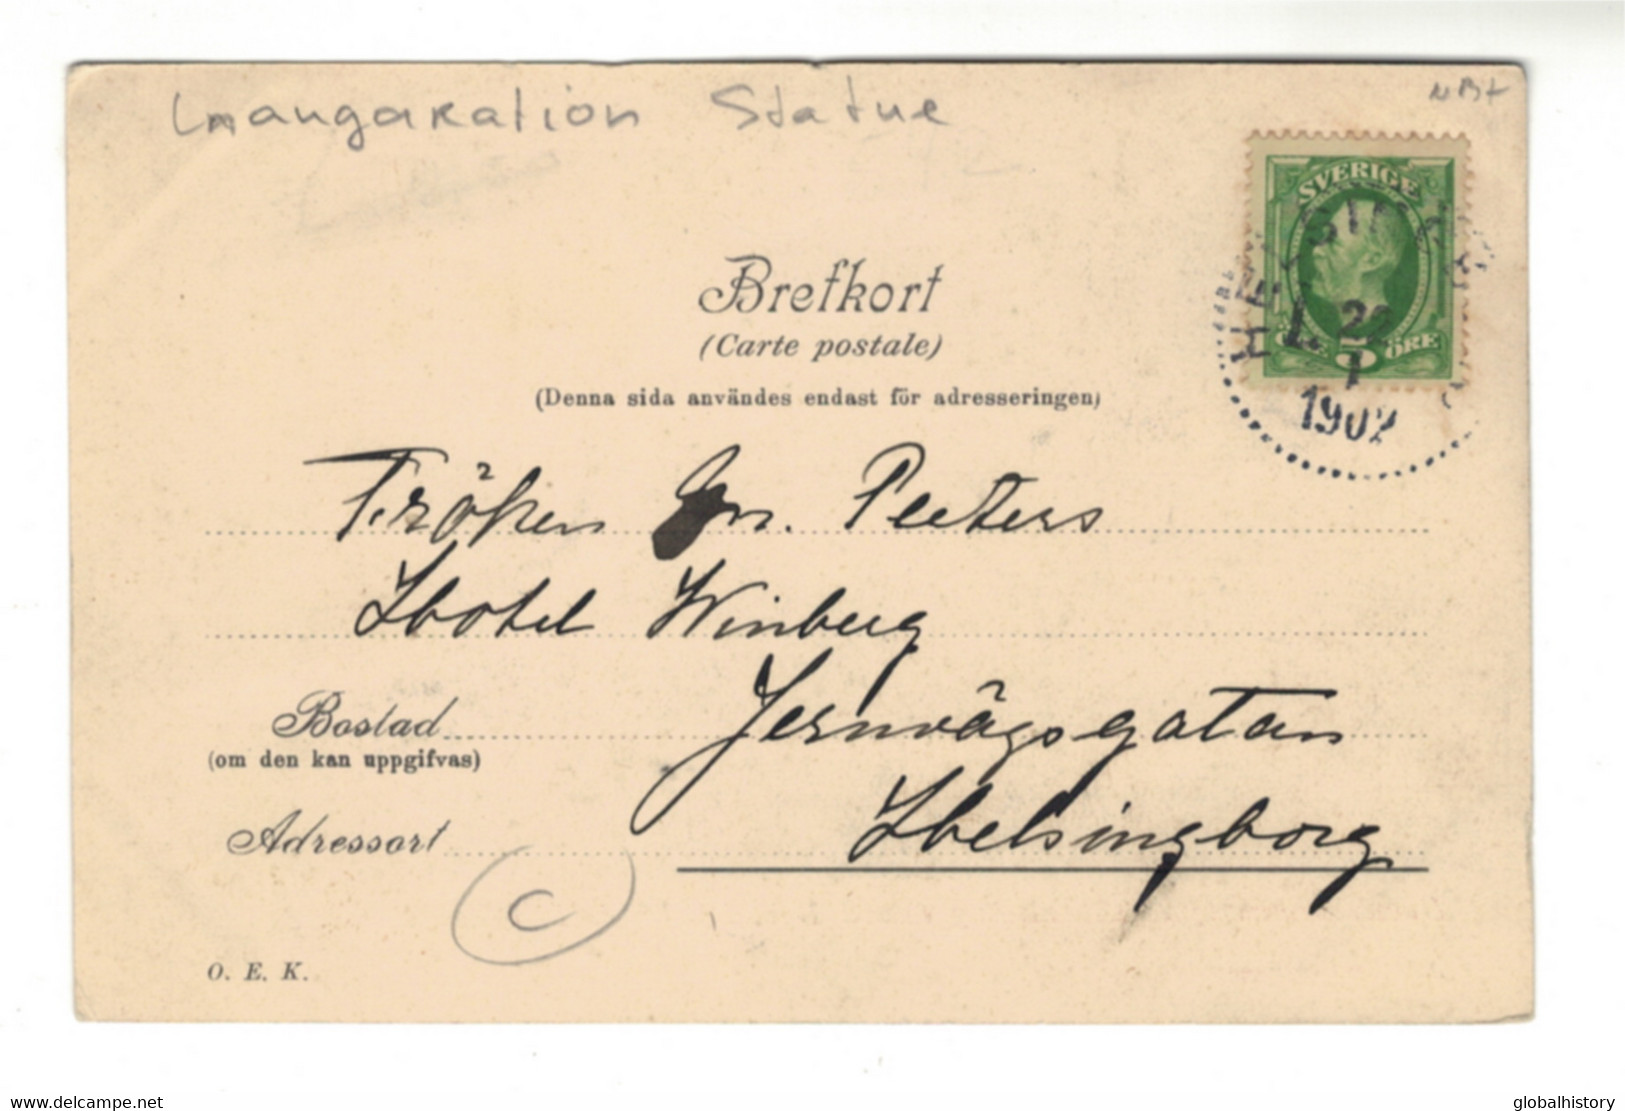 DG2892 - HELSINGBORG - STENBOCKSSTATYNS AFTÄCKNING 3 Dec. 1901 - LANGARATION STATUE - Suecia